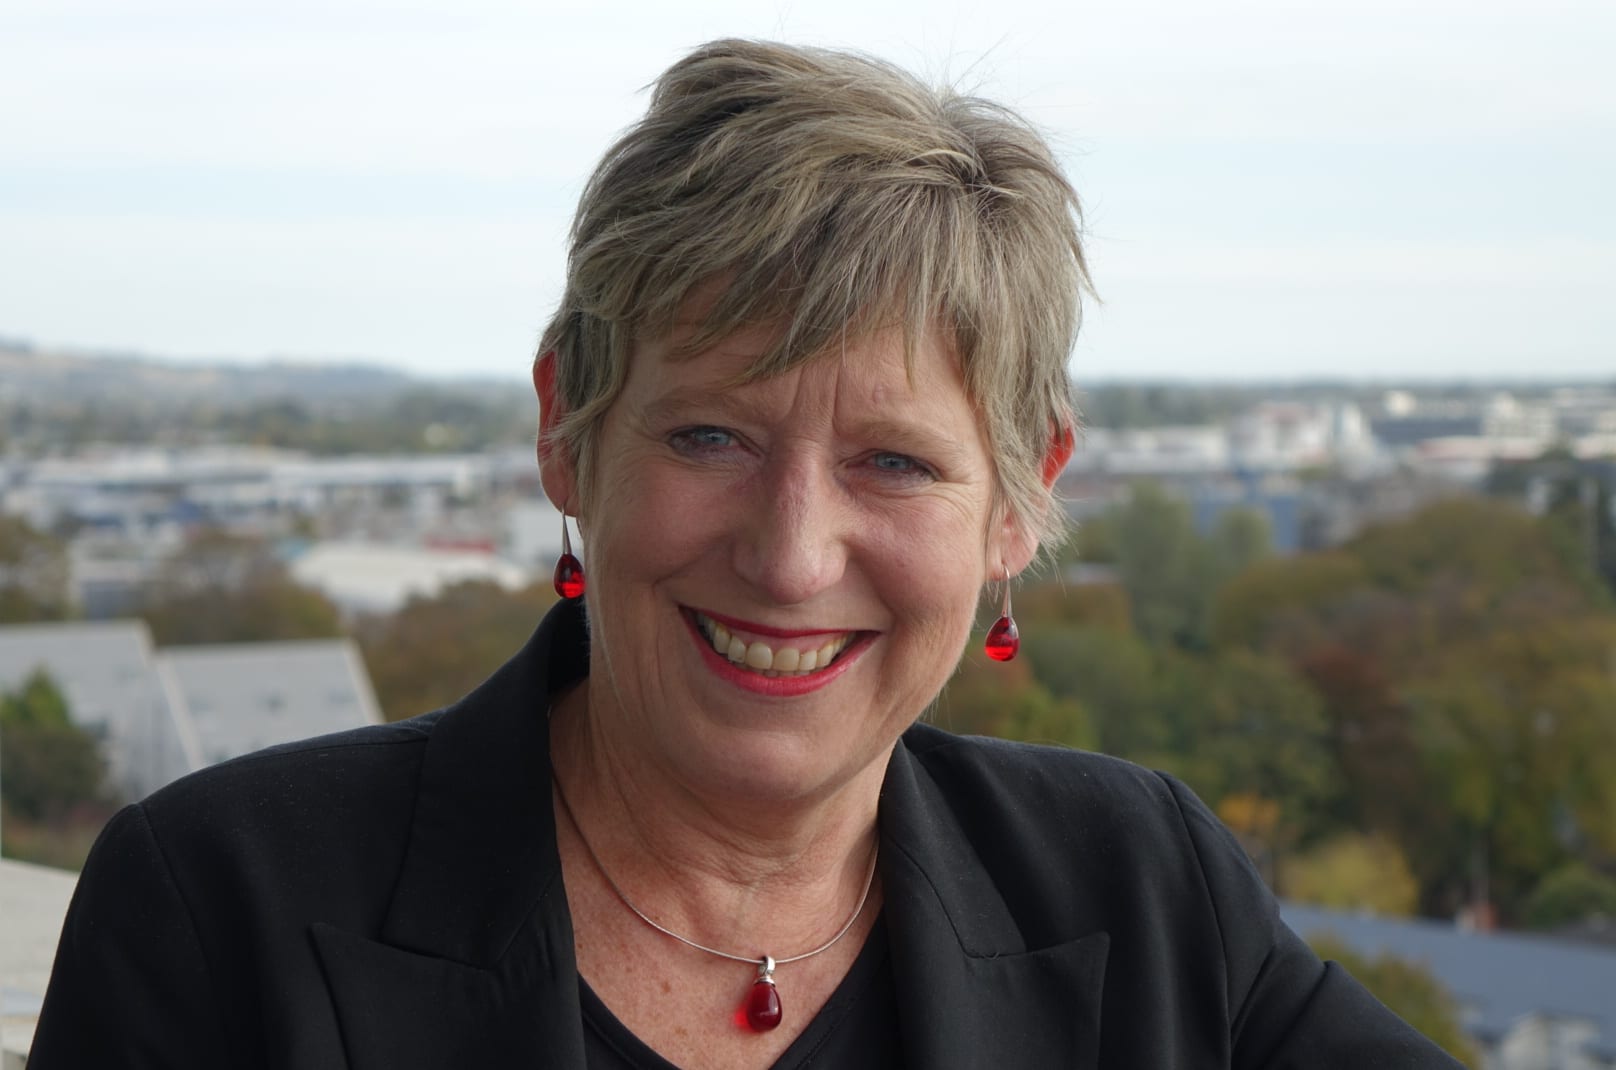 Christchurch mayor Lianne Dalziel